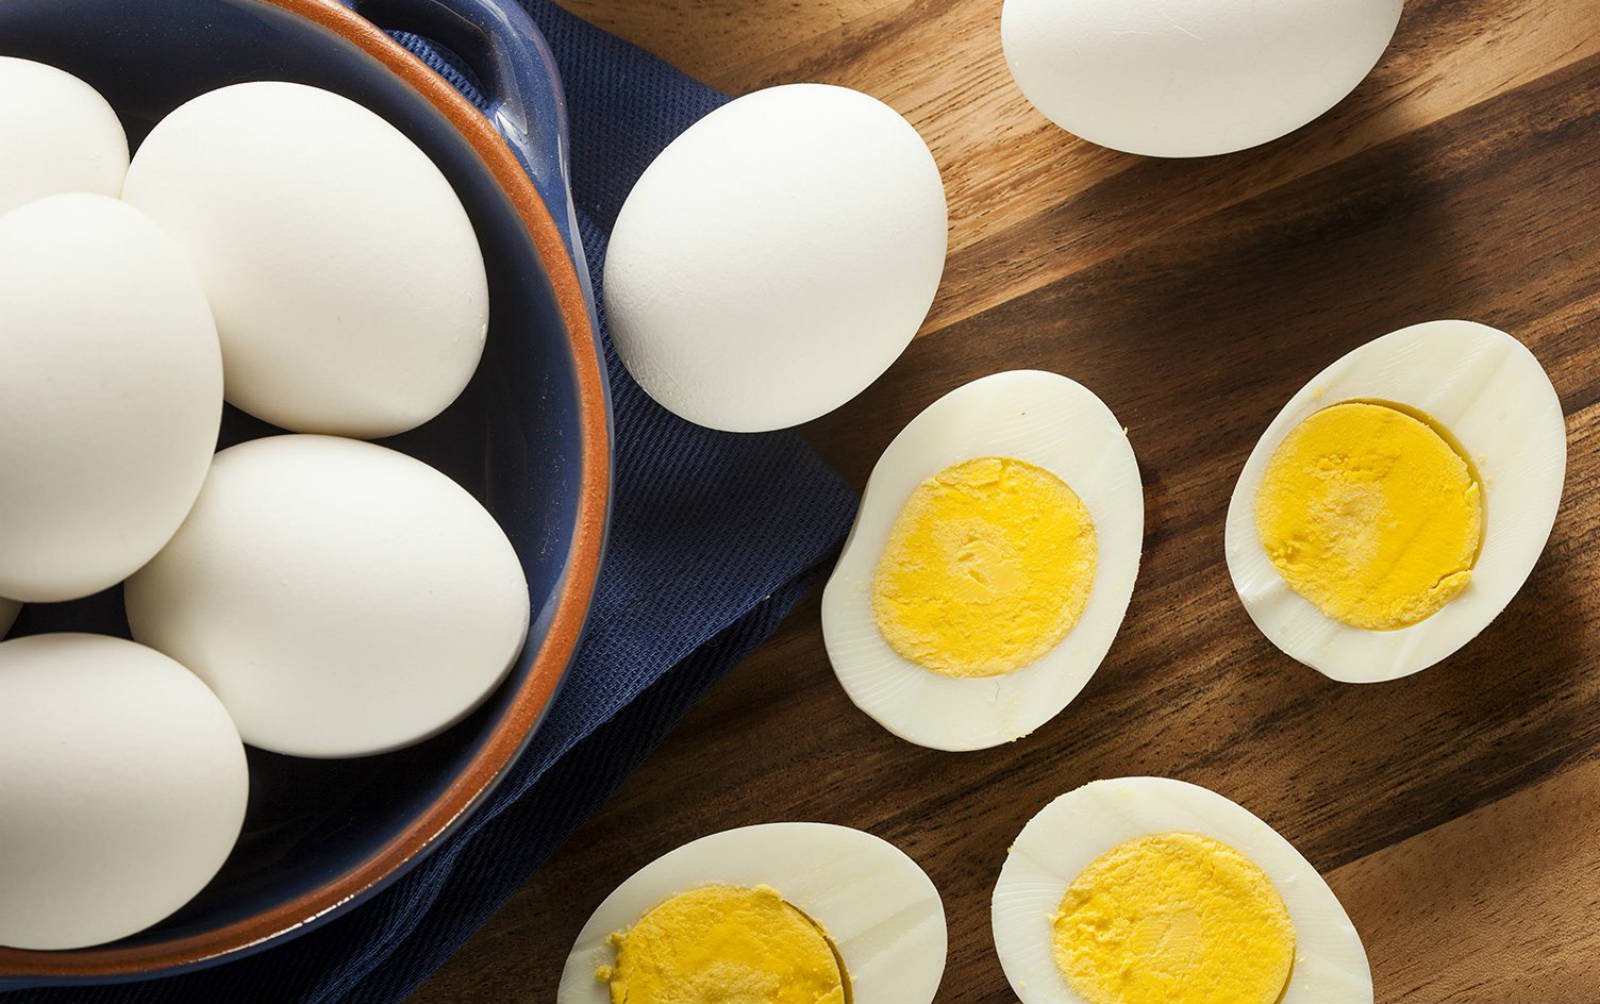 Sebutkan 5 ciri-ciri telur asin yang berkualitas tinggi